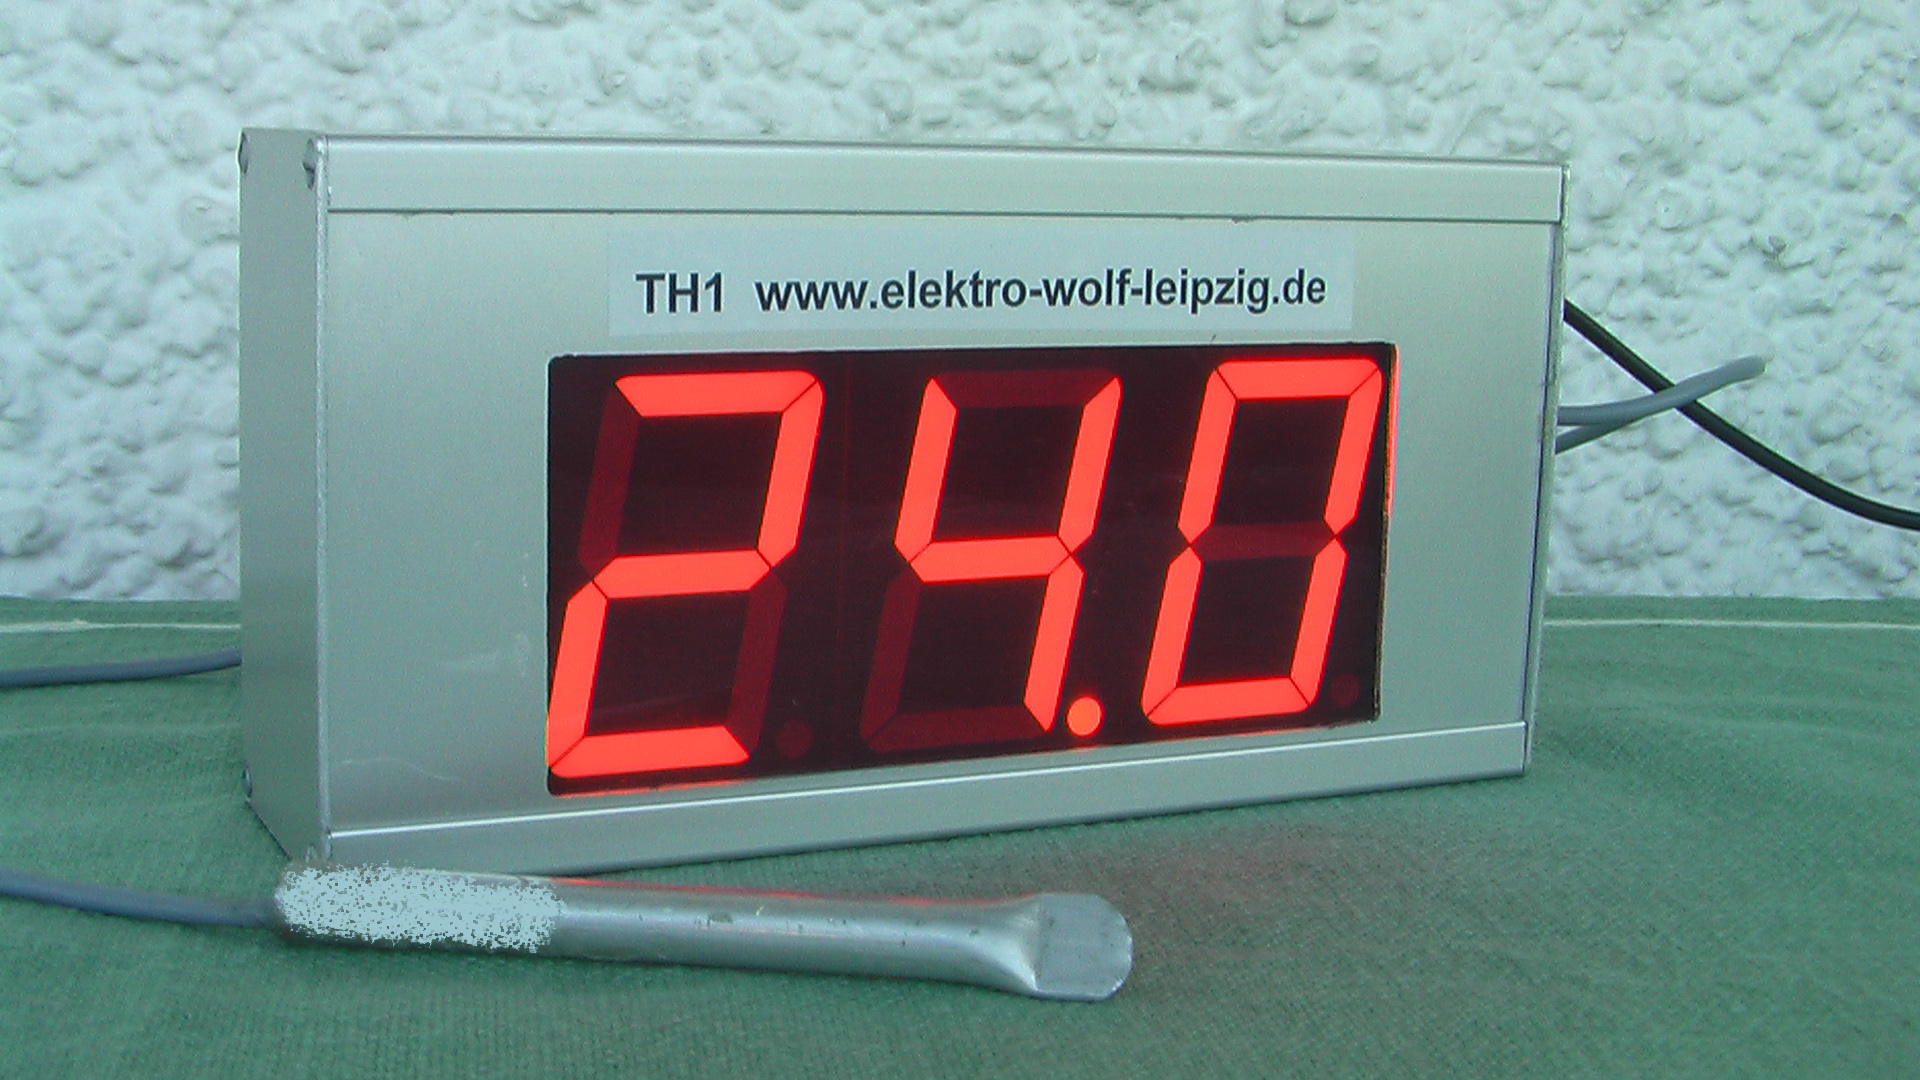 Temperaturgroanzeige IP 20 innen v. Elektro-Wolf-Leipzig